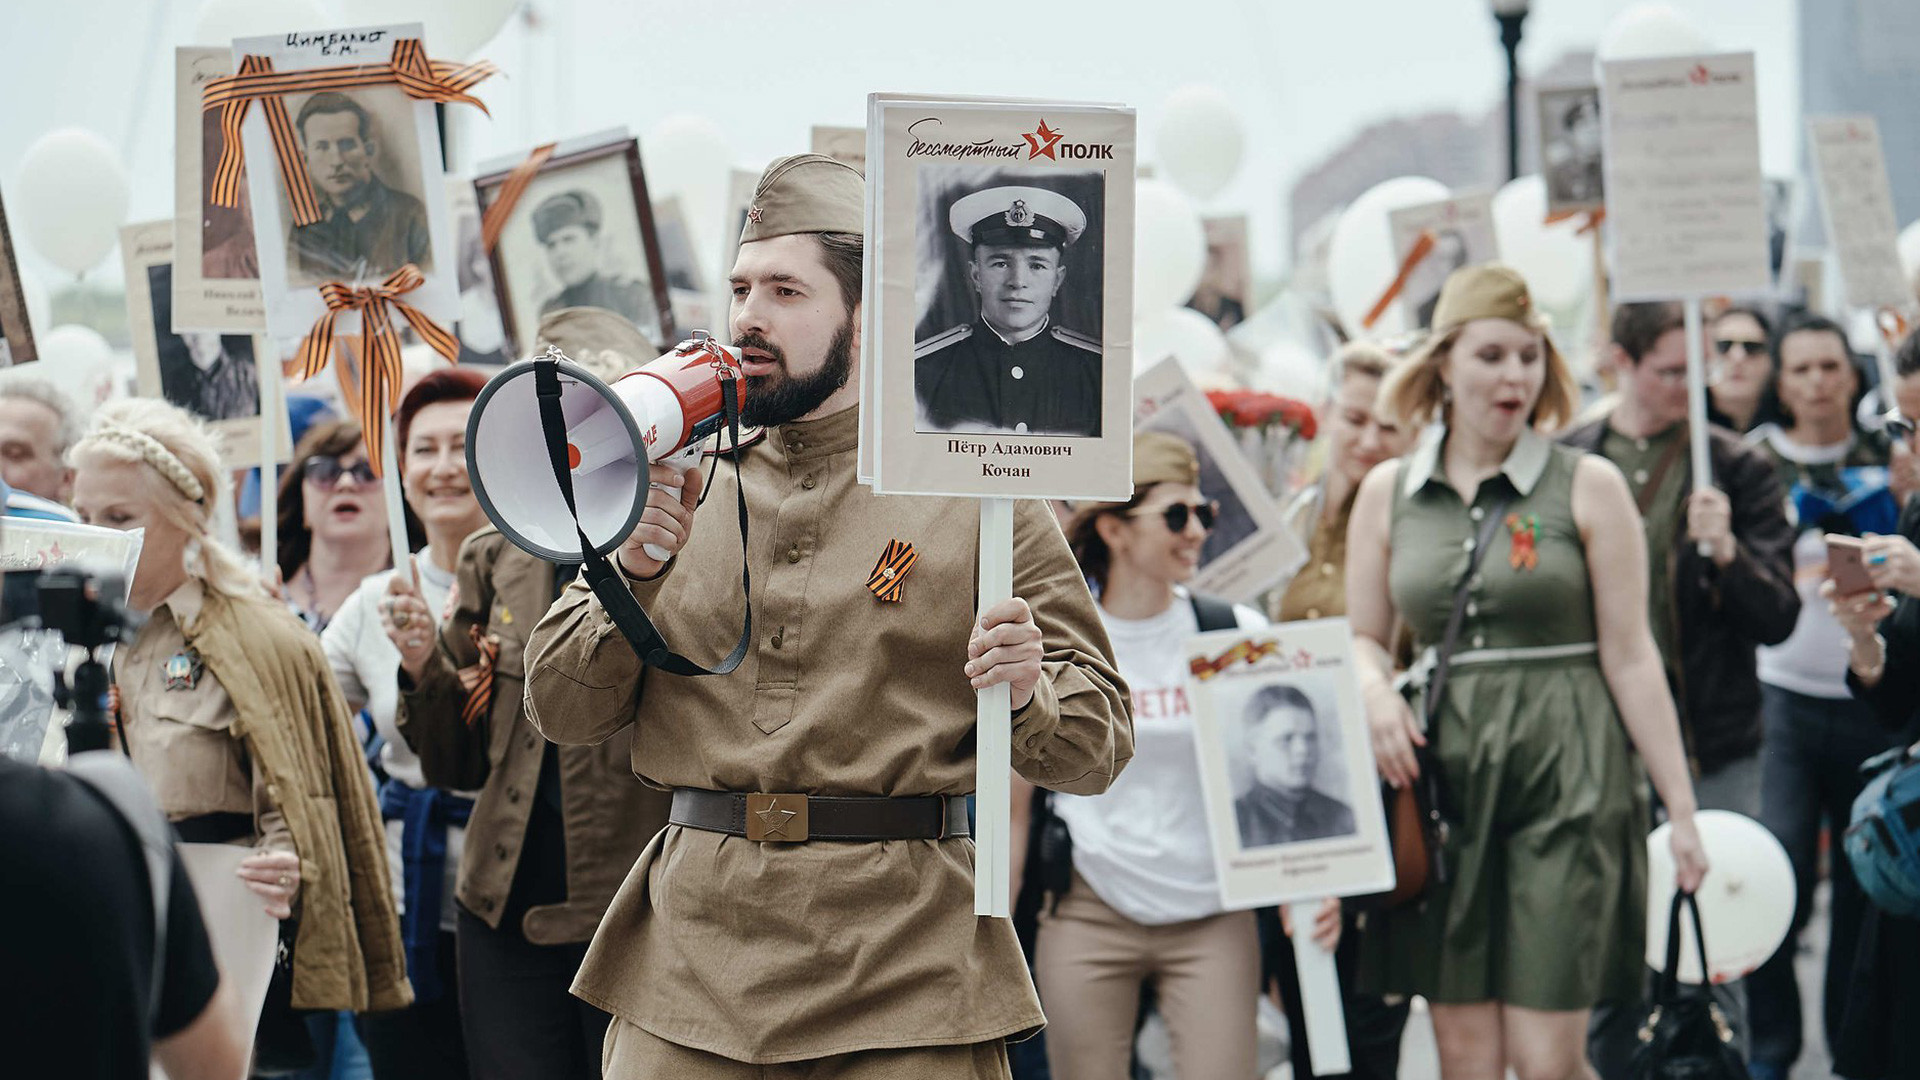 Il Cremlino ha paura: annullata la marcia del Reggimento Immortale sulla piazza Rossa